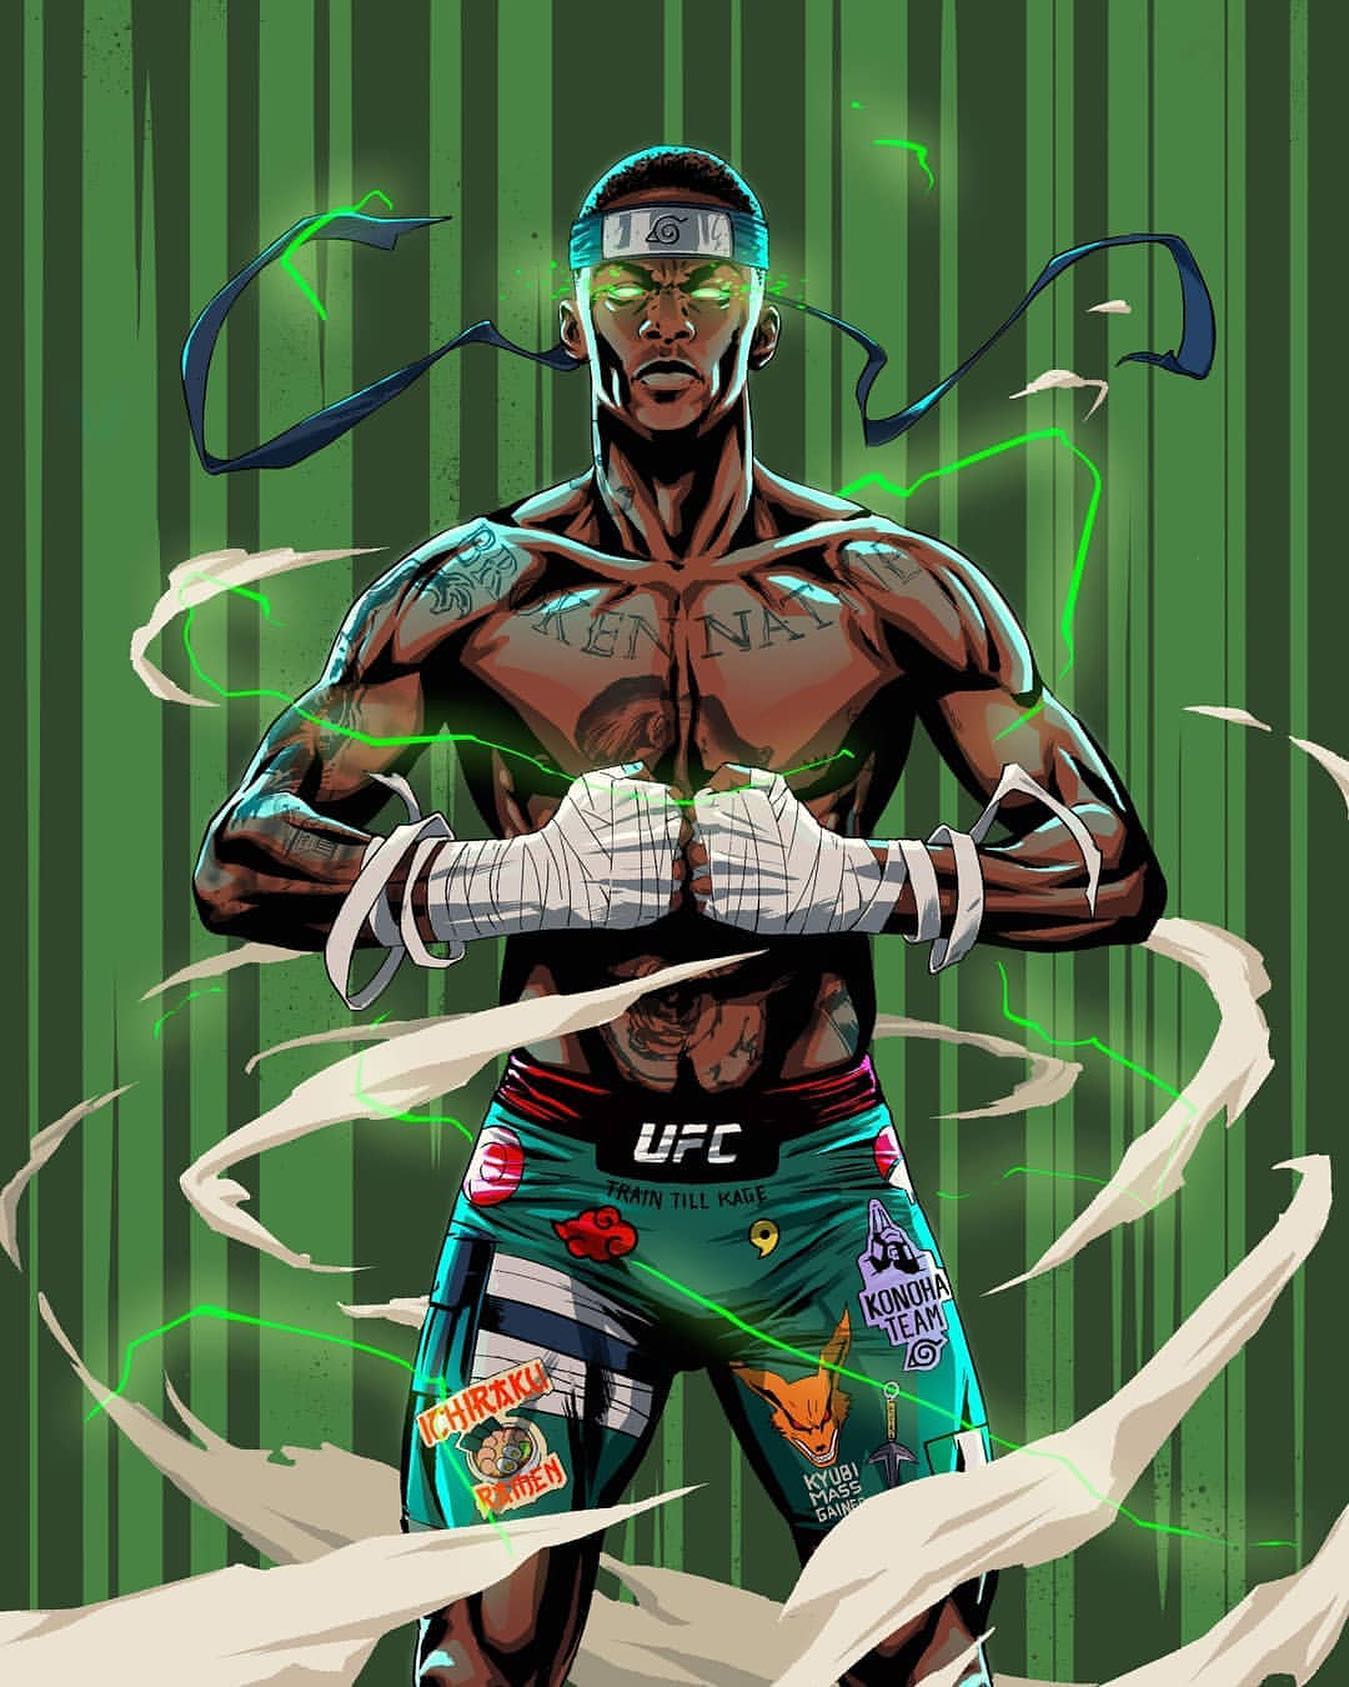 UFC 253 - Abu Dhabi  - Posters des fans